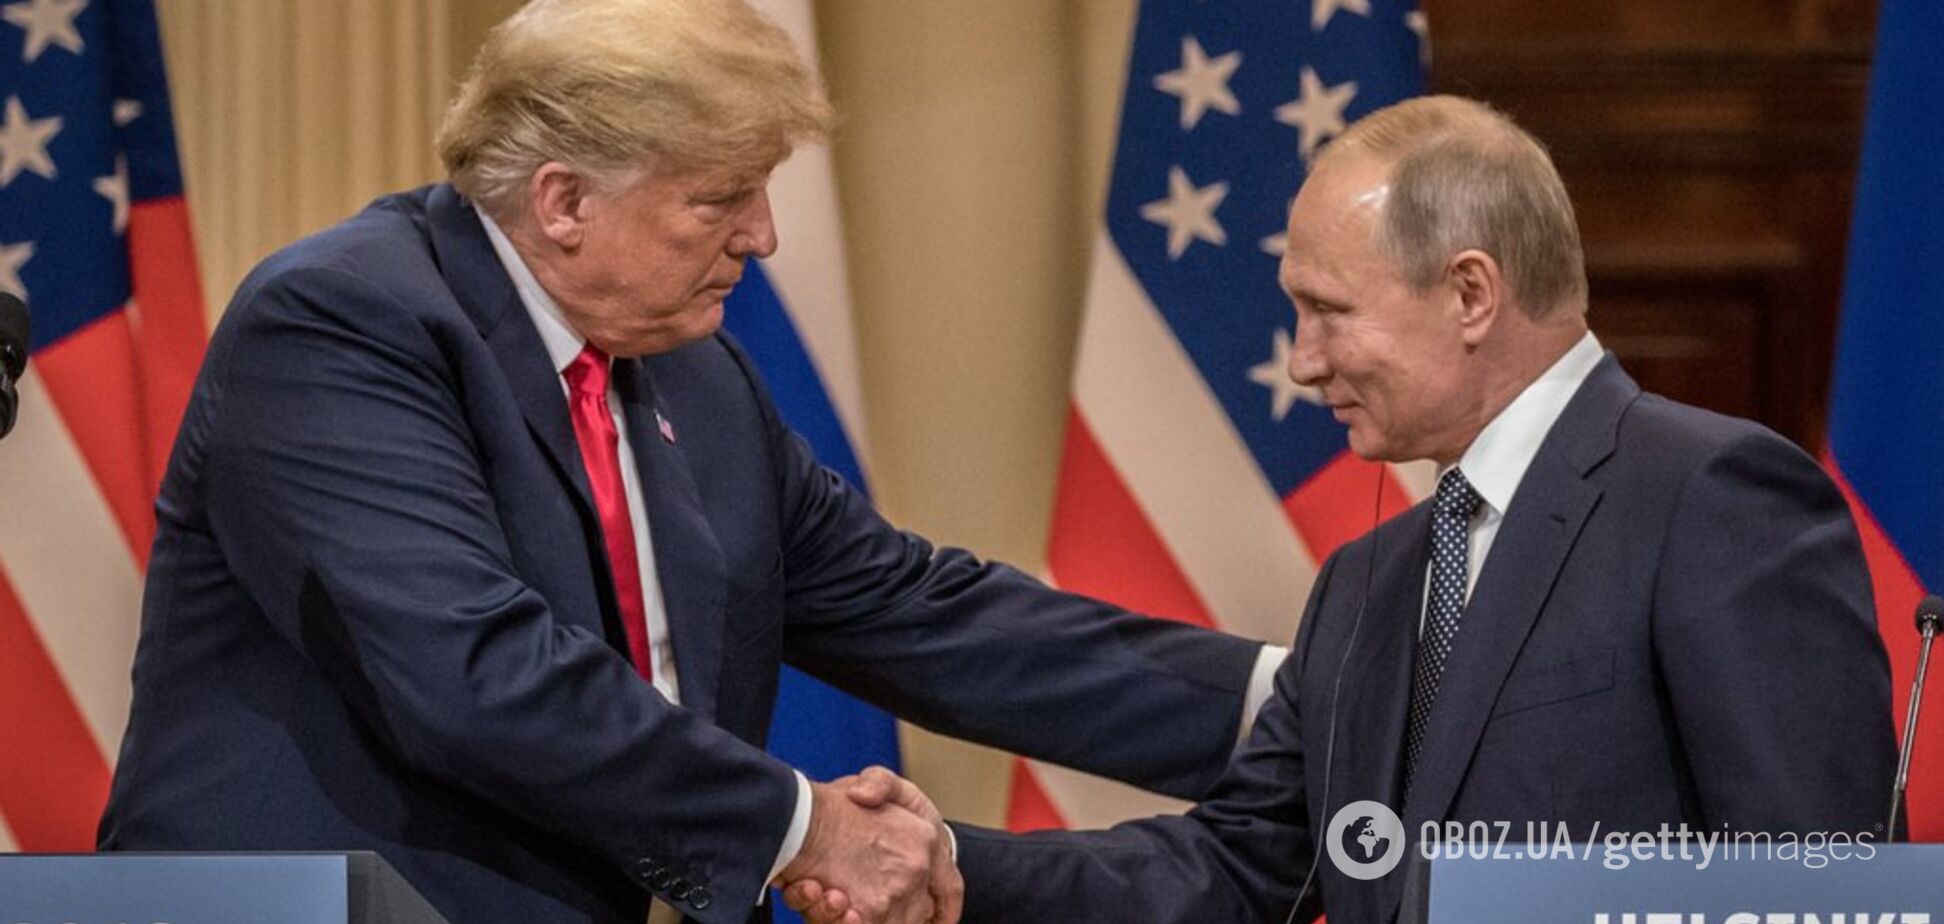 'Хочу поладить с Россией!' Трамп подтвердил встречу с Путиным